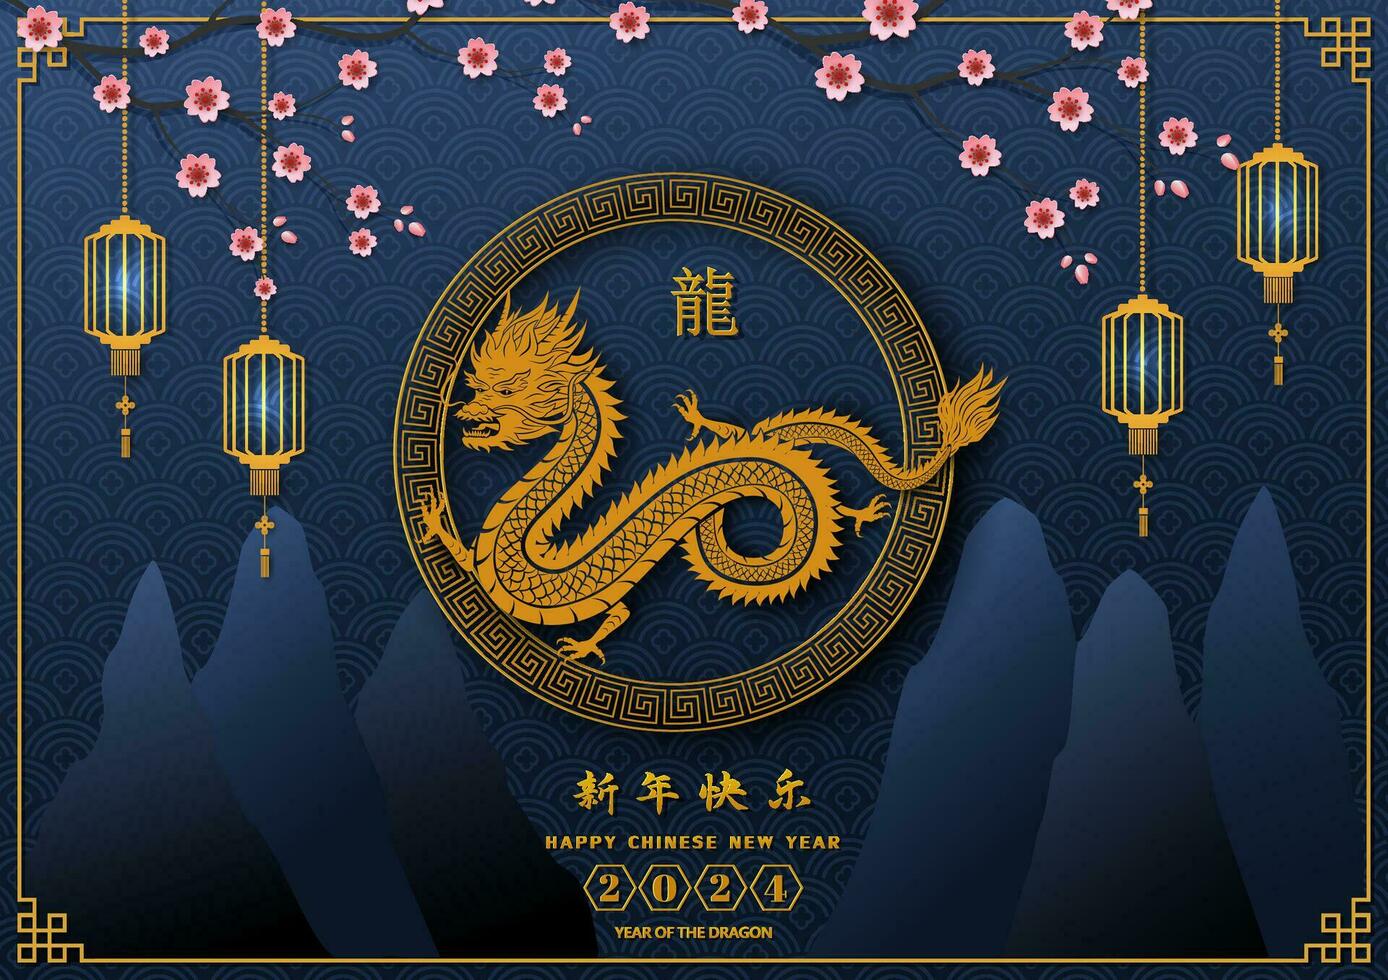 content chinois Nouveau année 2024, zodiaque signe pour le année de dragon sur bleu arrière-plan, chinois traduire signifier content Nouveau année 2024, dragon année vecteur